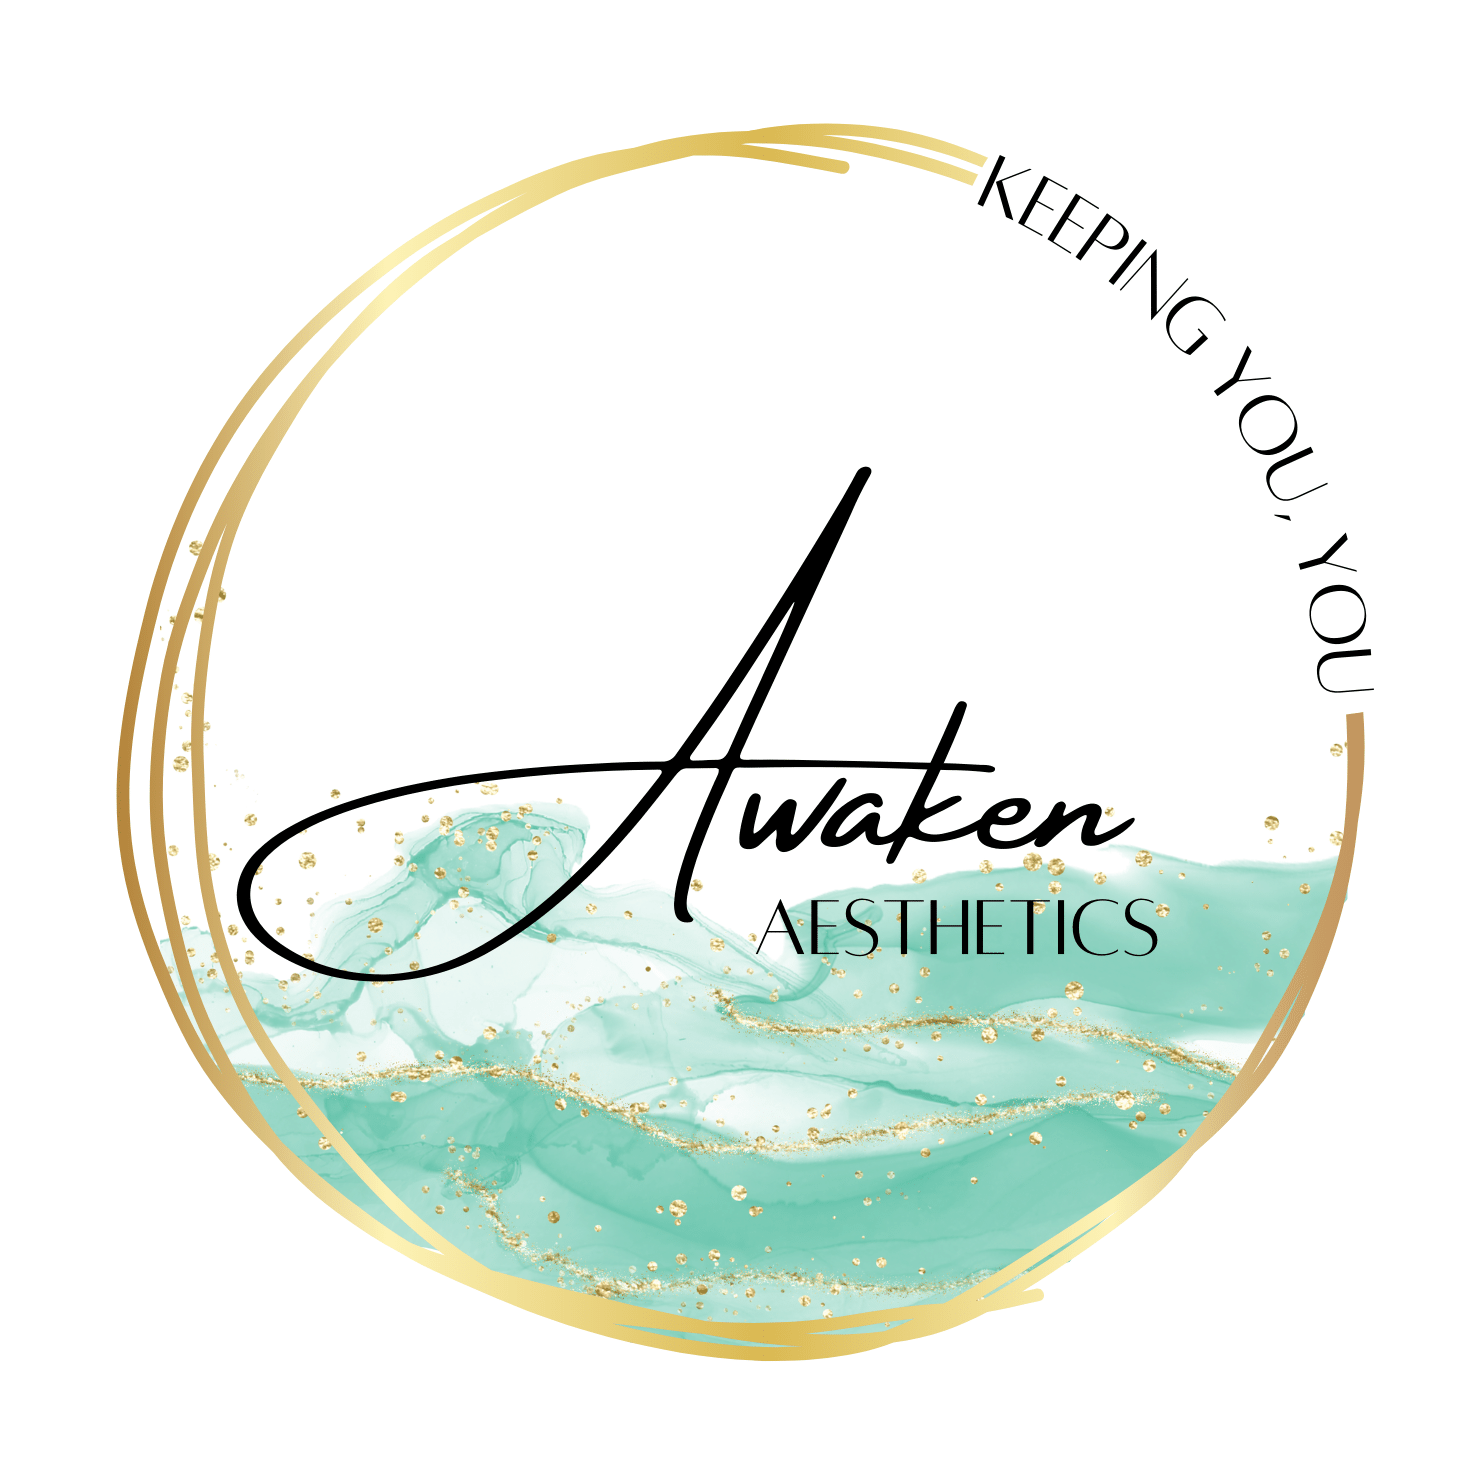 Awaken Aesthetics Logo